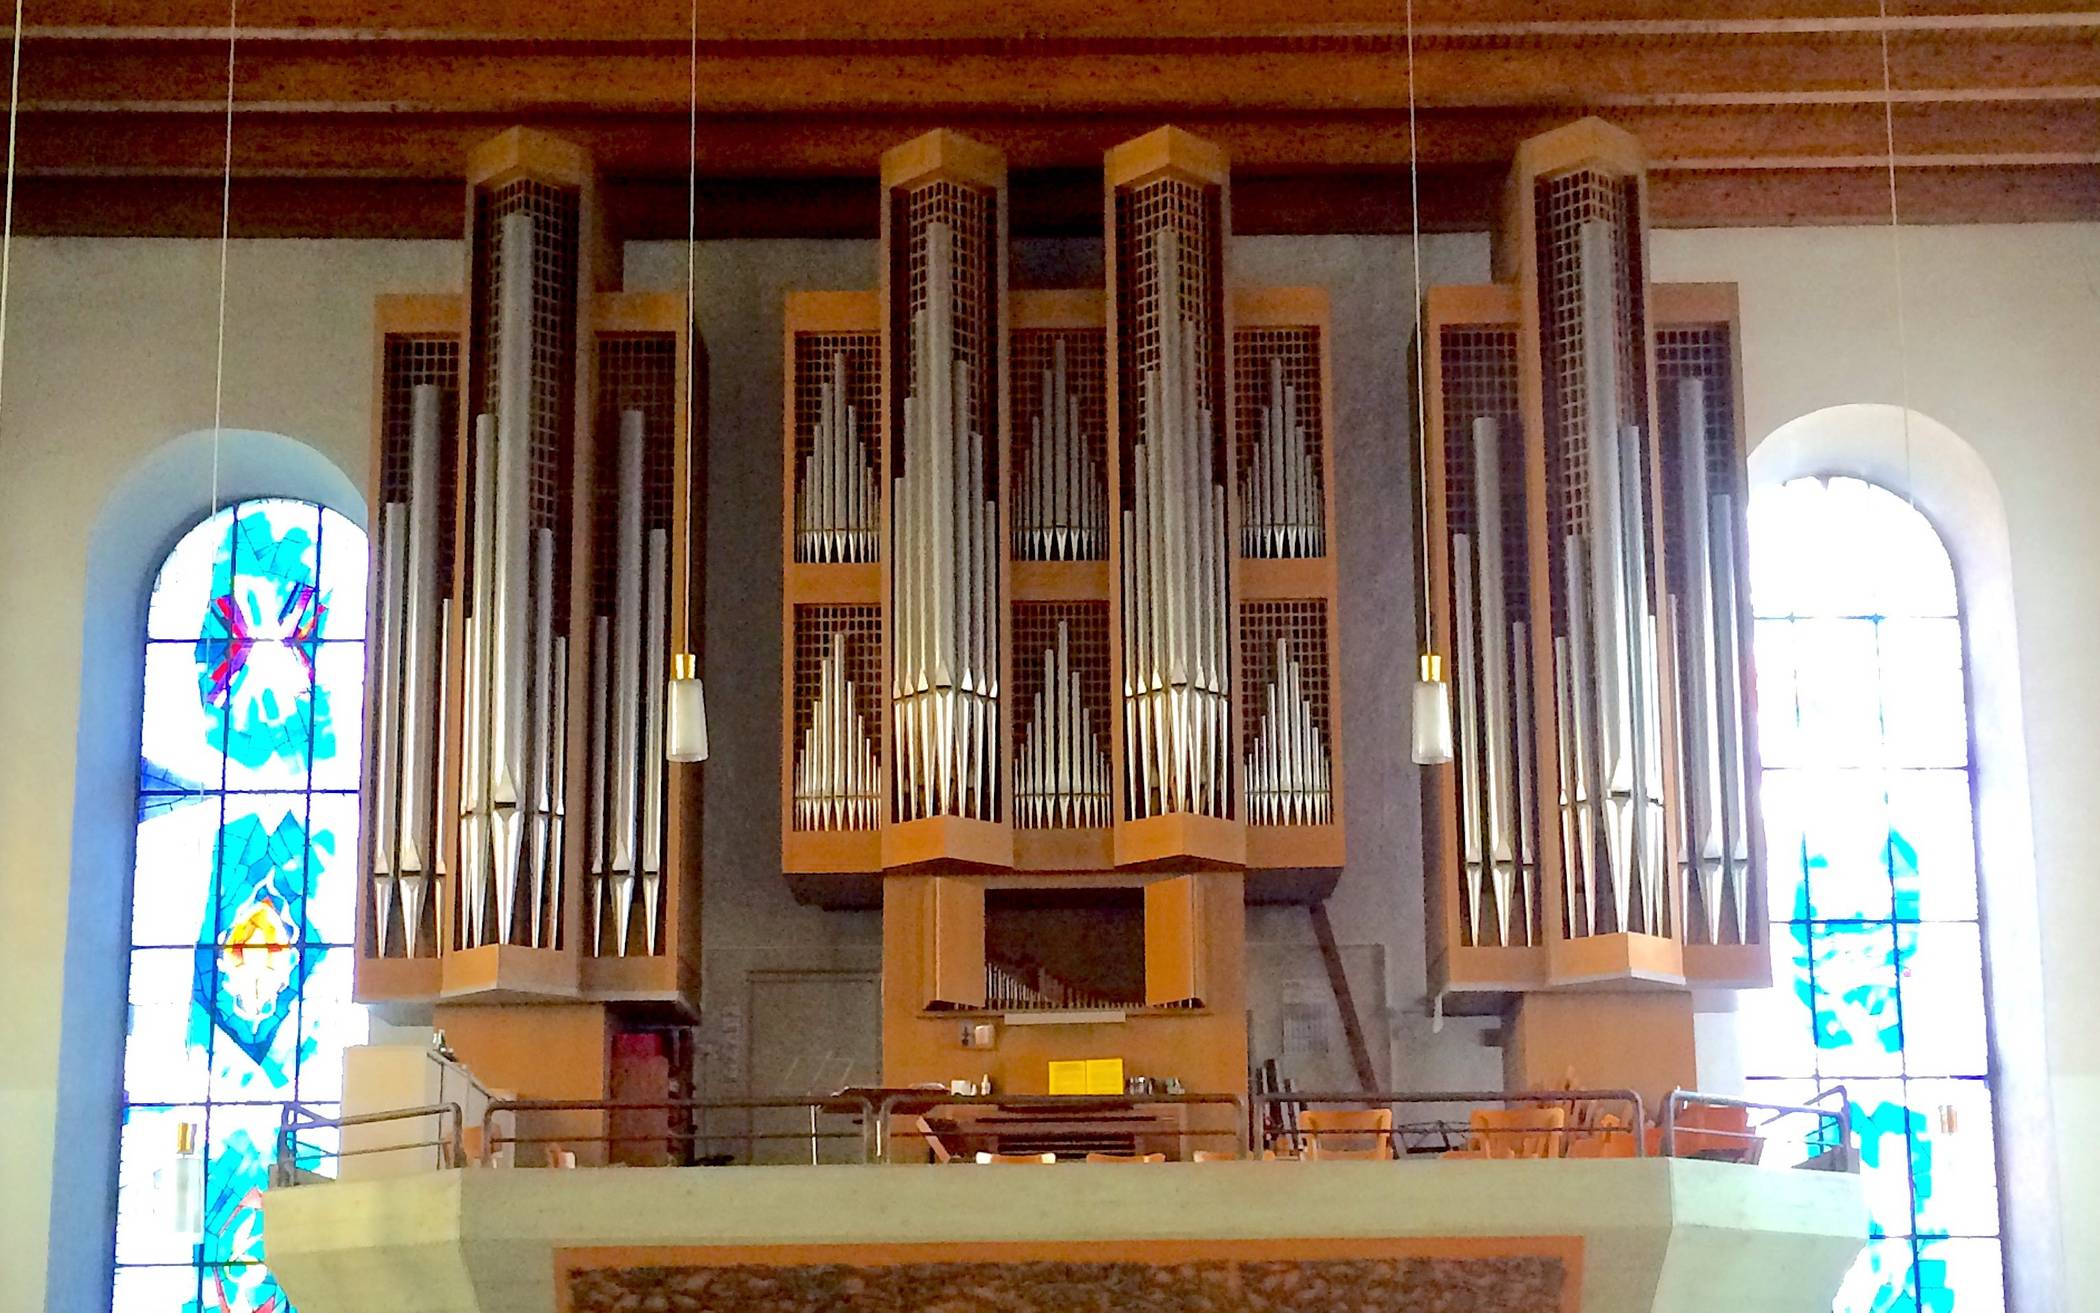  Die Klais-Orgel der Alten luth. Kirche am Kolk. 